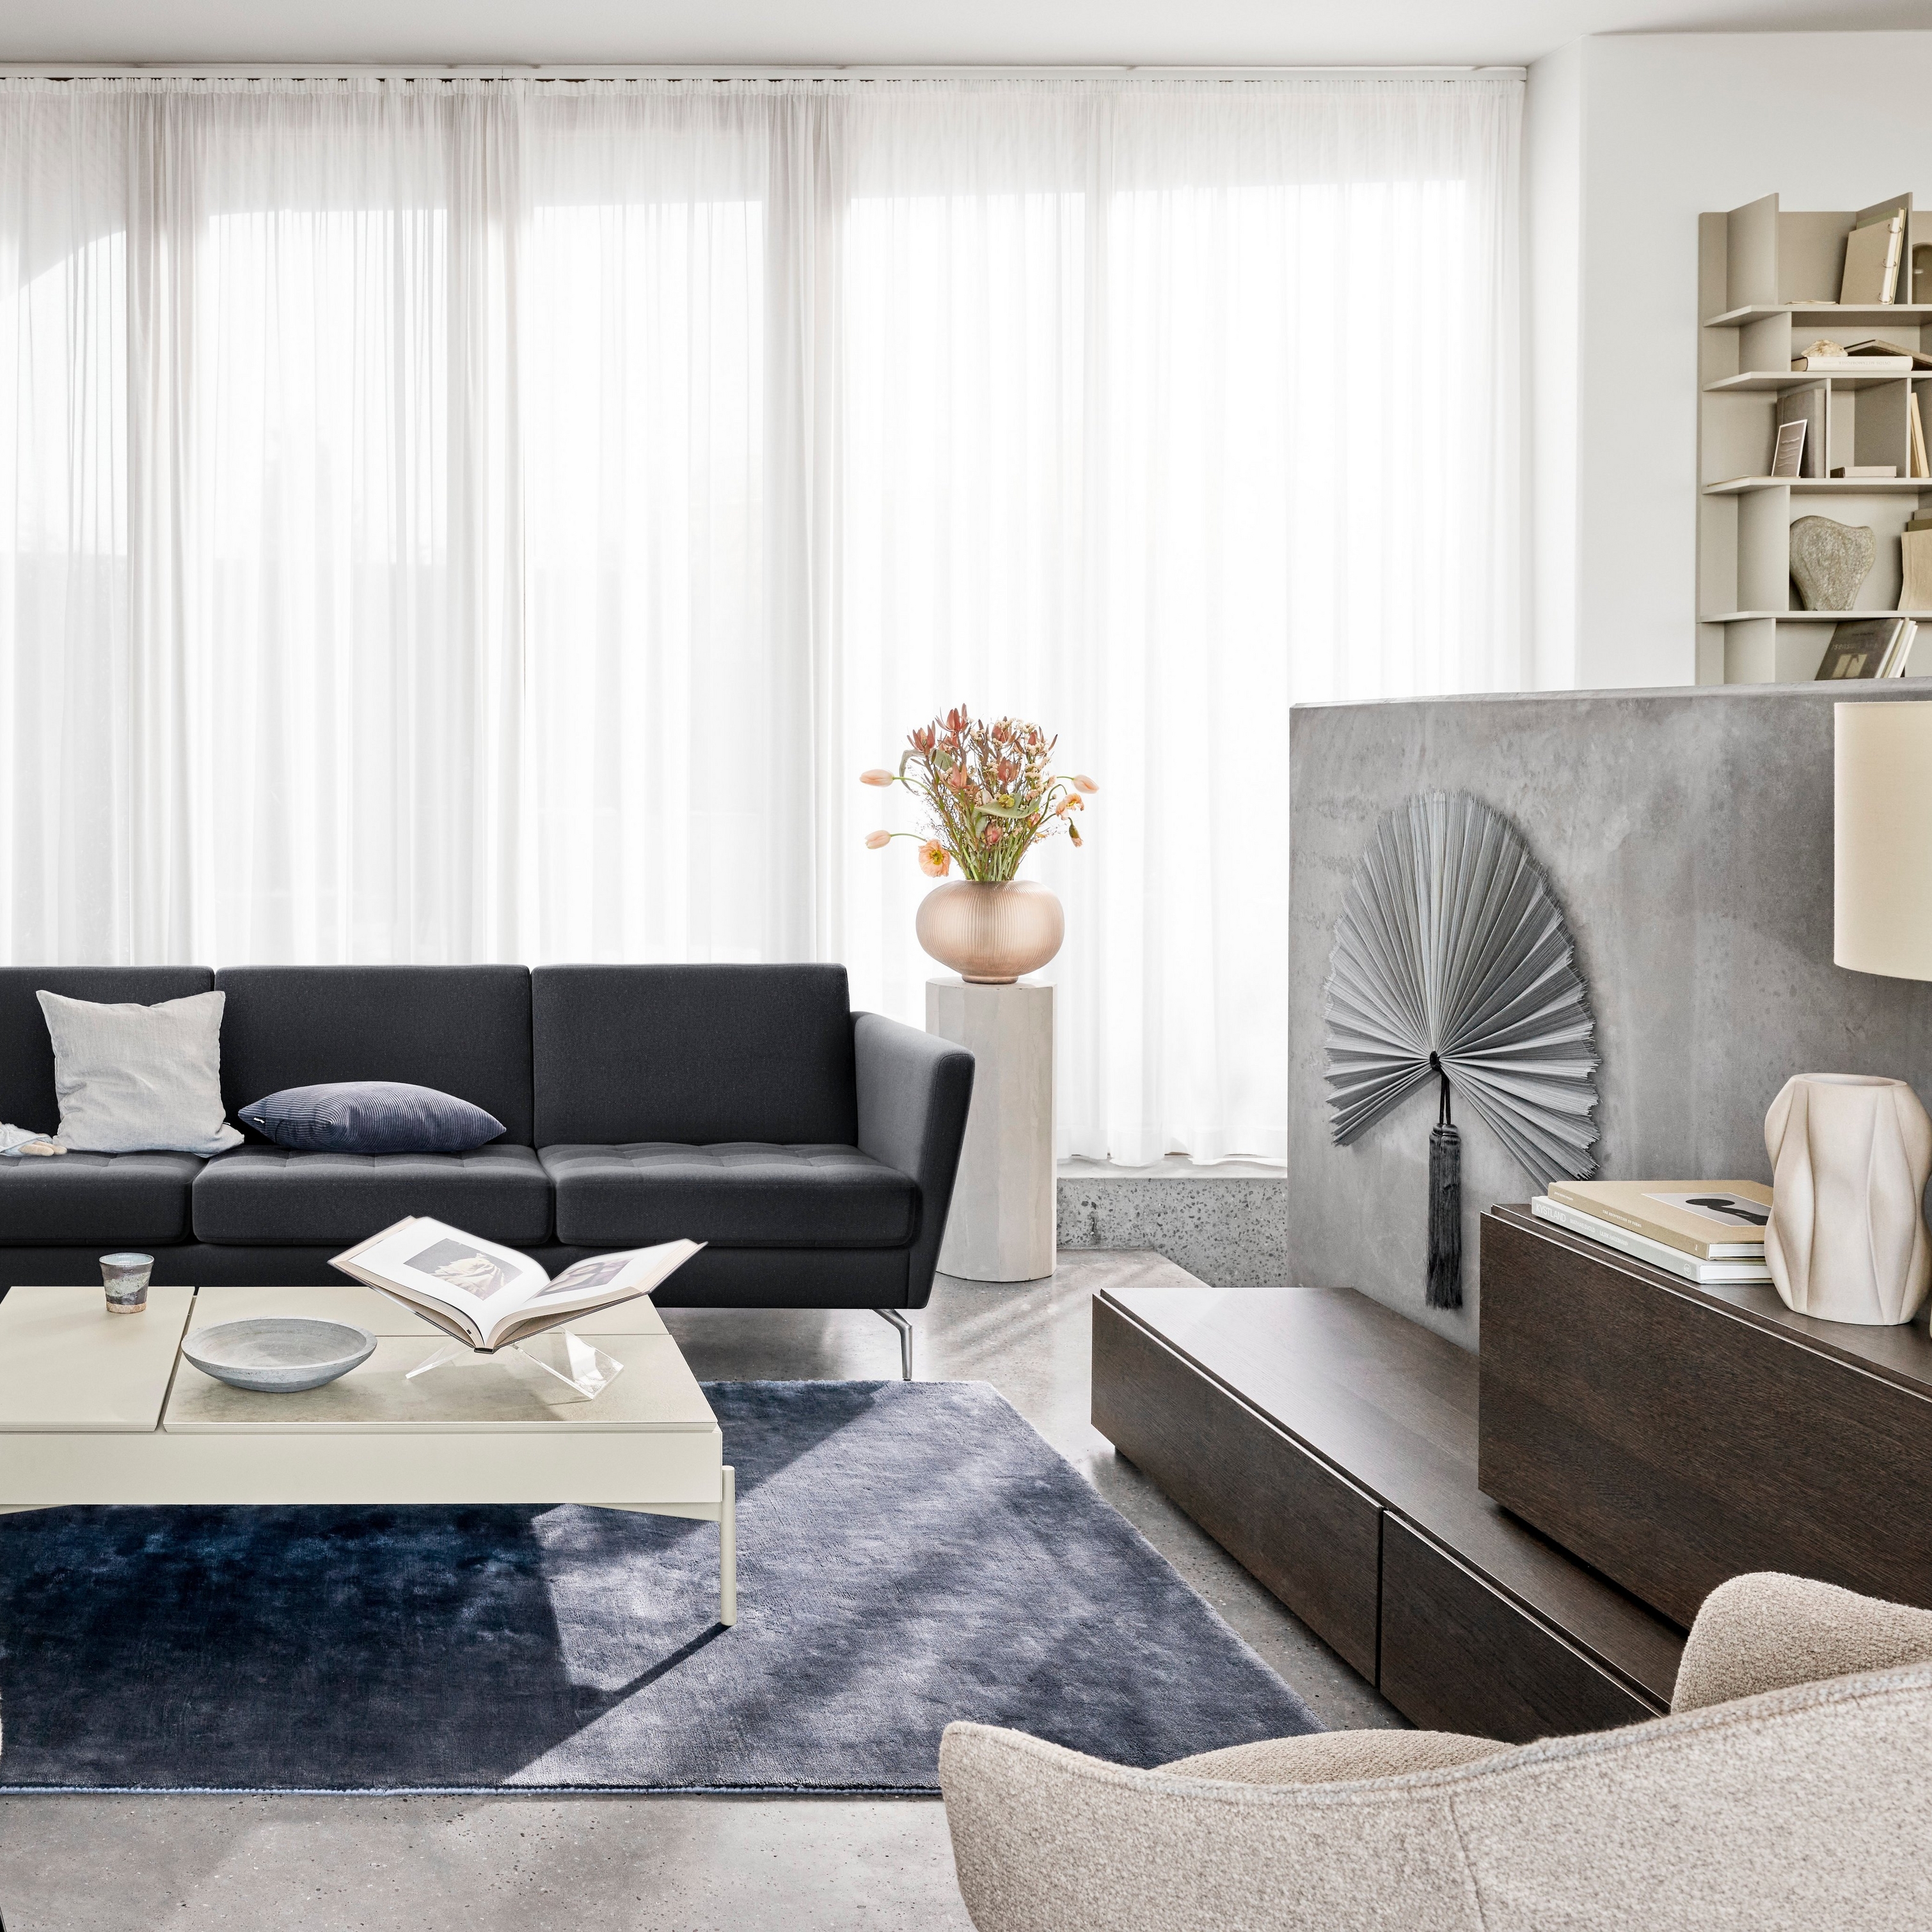 Modernes Wohnzimmer mit schwarzem Sofa, Stühlen, transparenten Vorhängen und dekorativen Elementen.